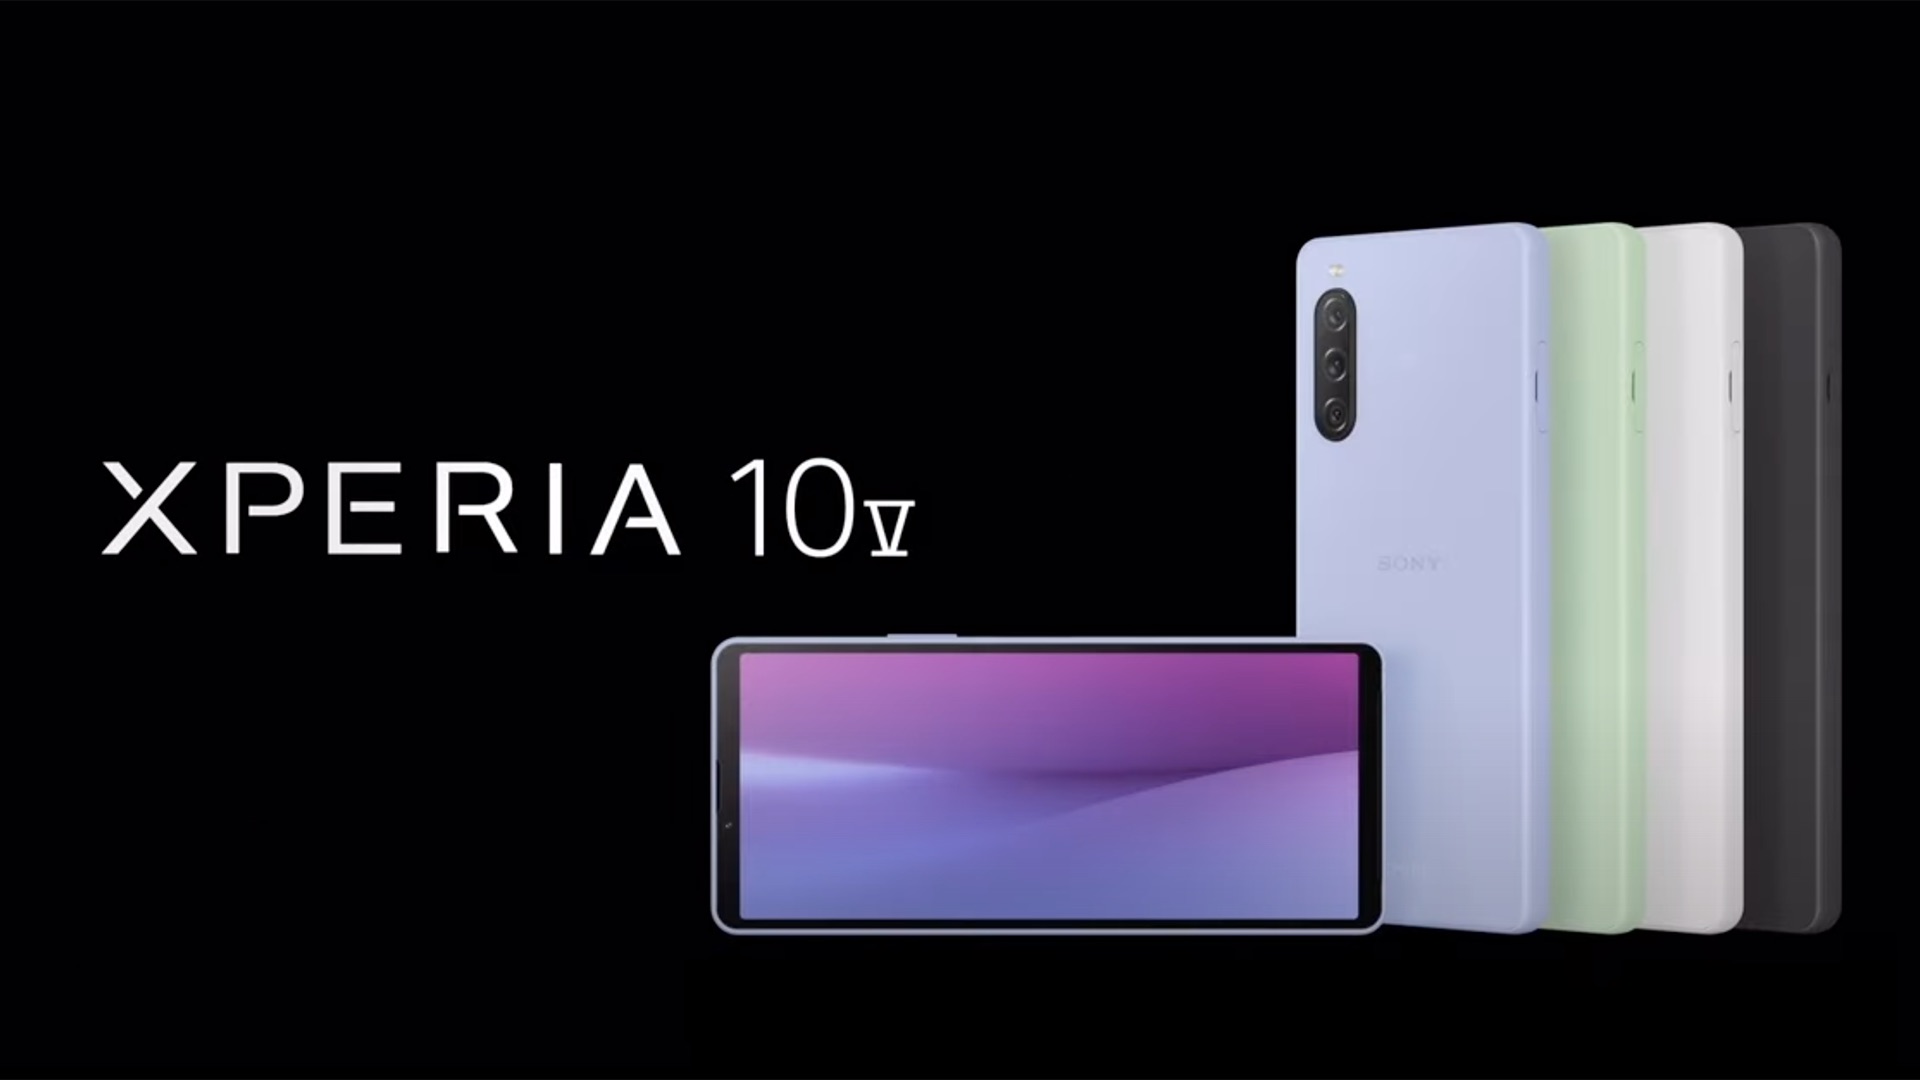 Sony Xperia 10V Shop Now